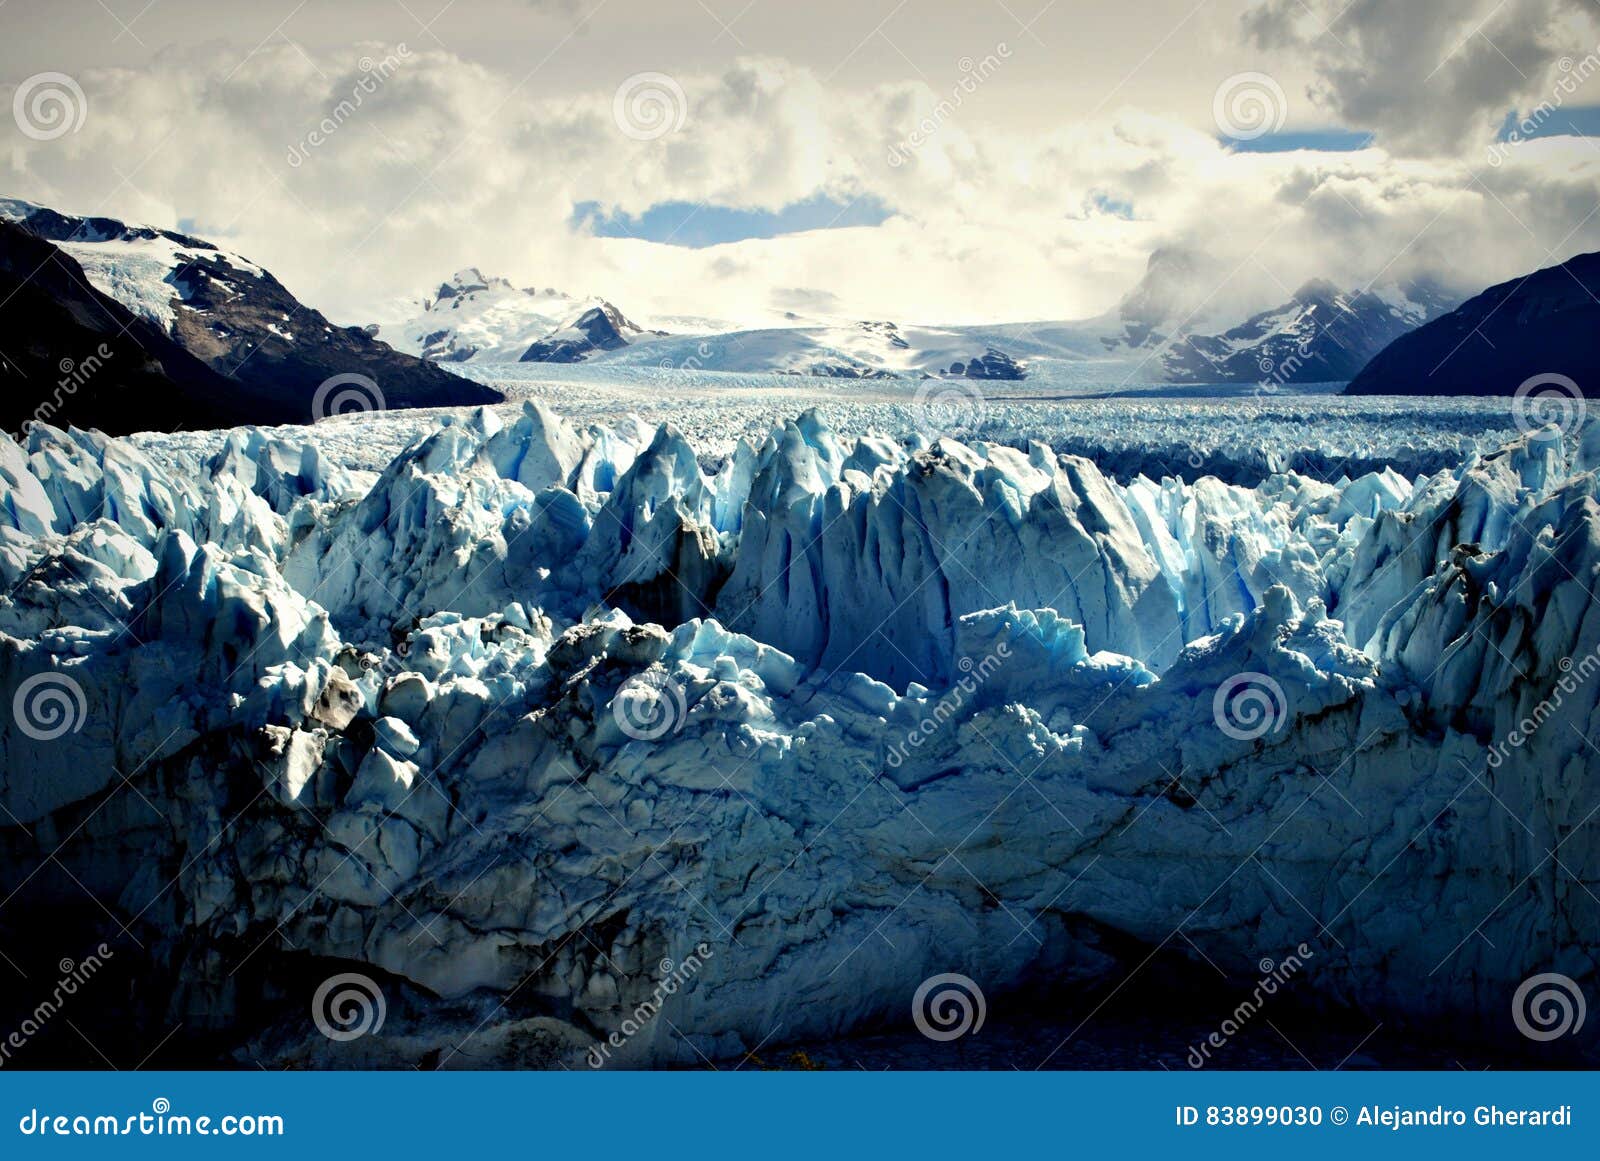 landscape of perito moreno`s glacier